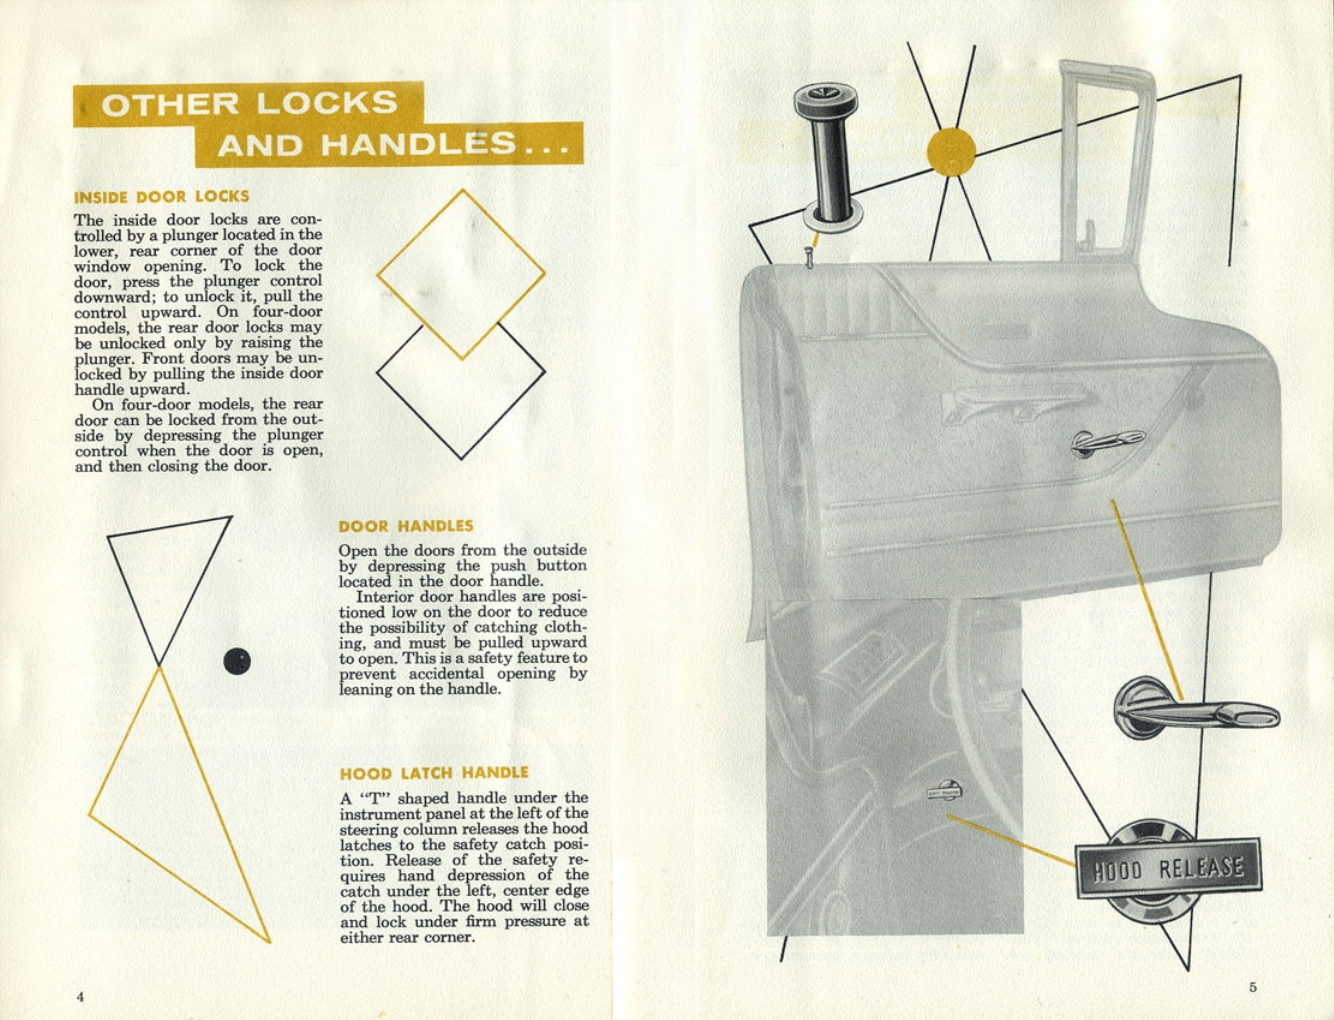 n_1960 Mercury Manual-04-05.jpg